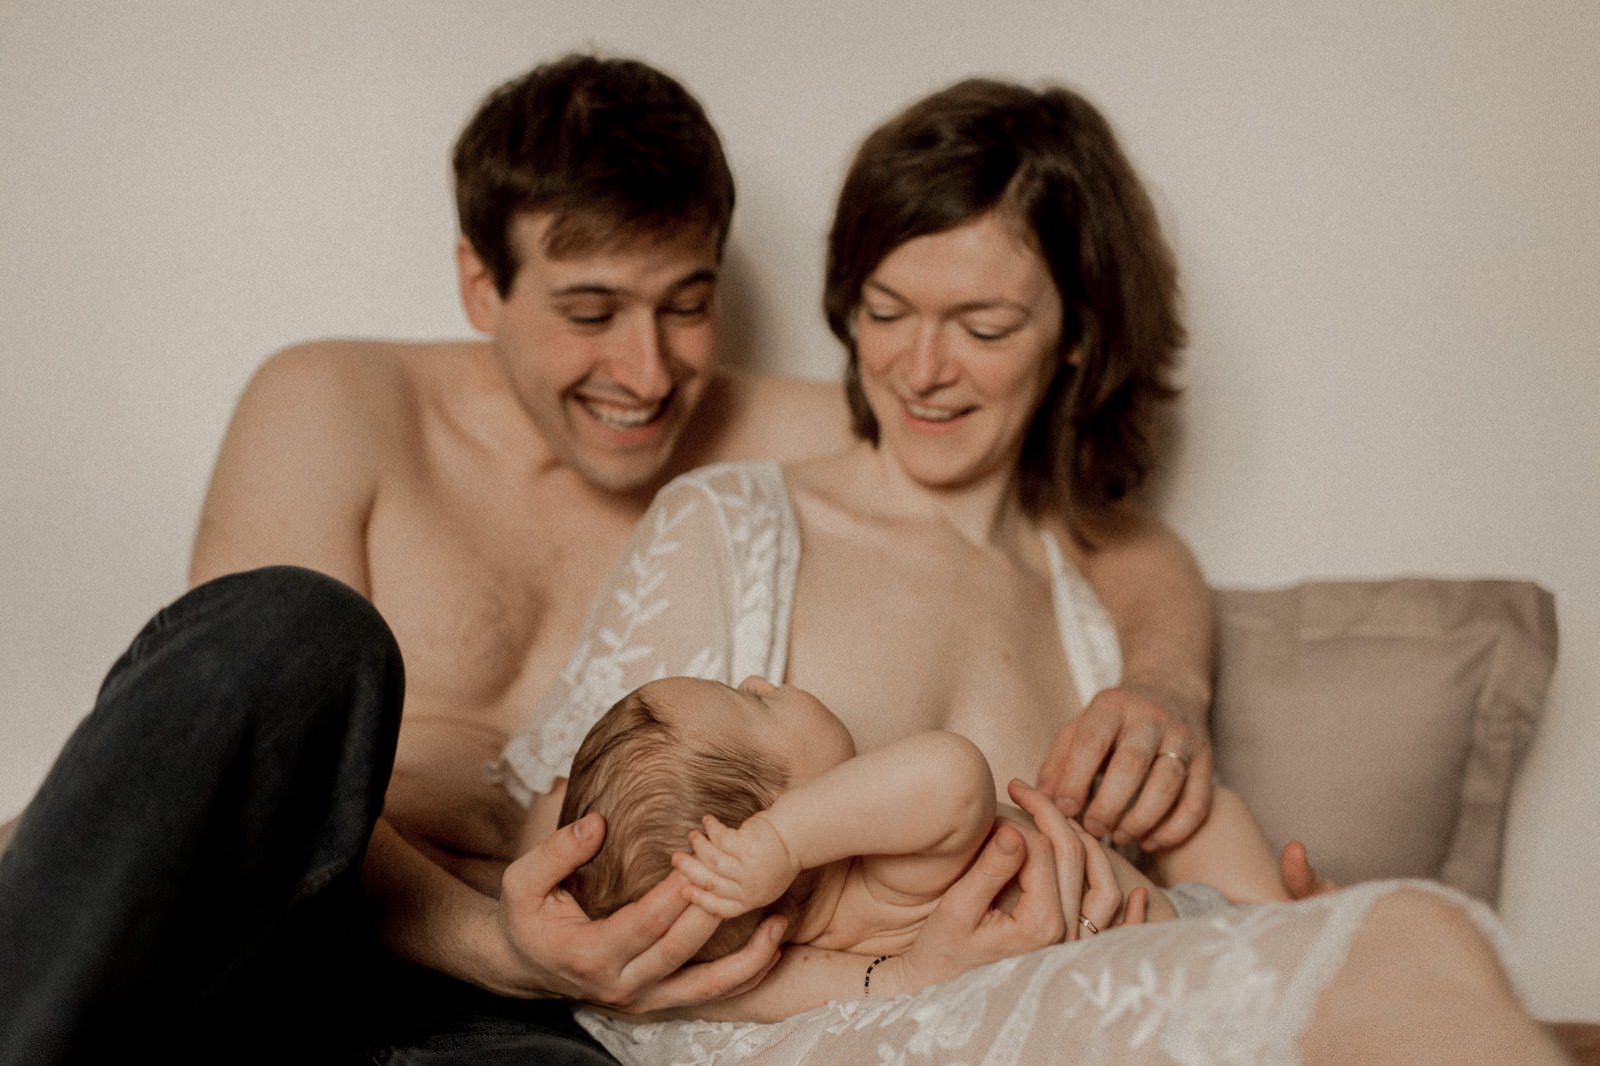 photographe vidéaste photo vidéo allaitement bébé nouveau né à la maison caen calvados